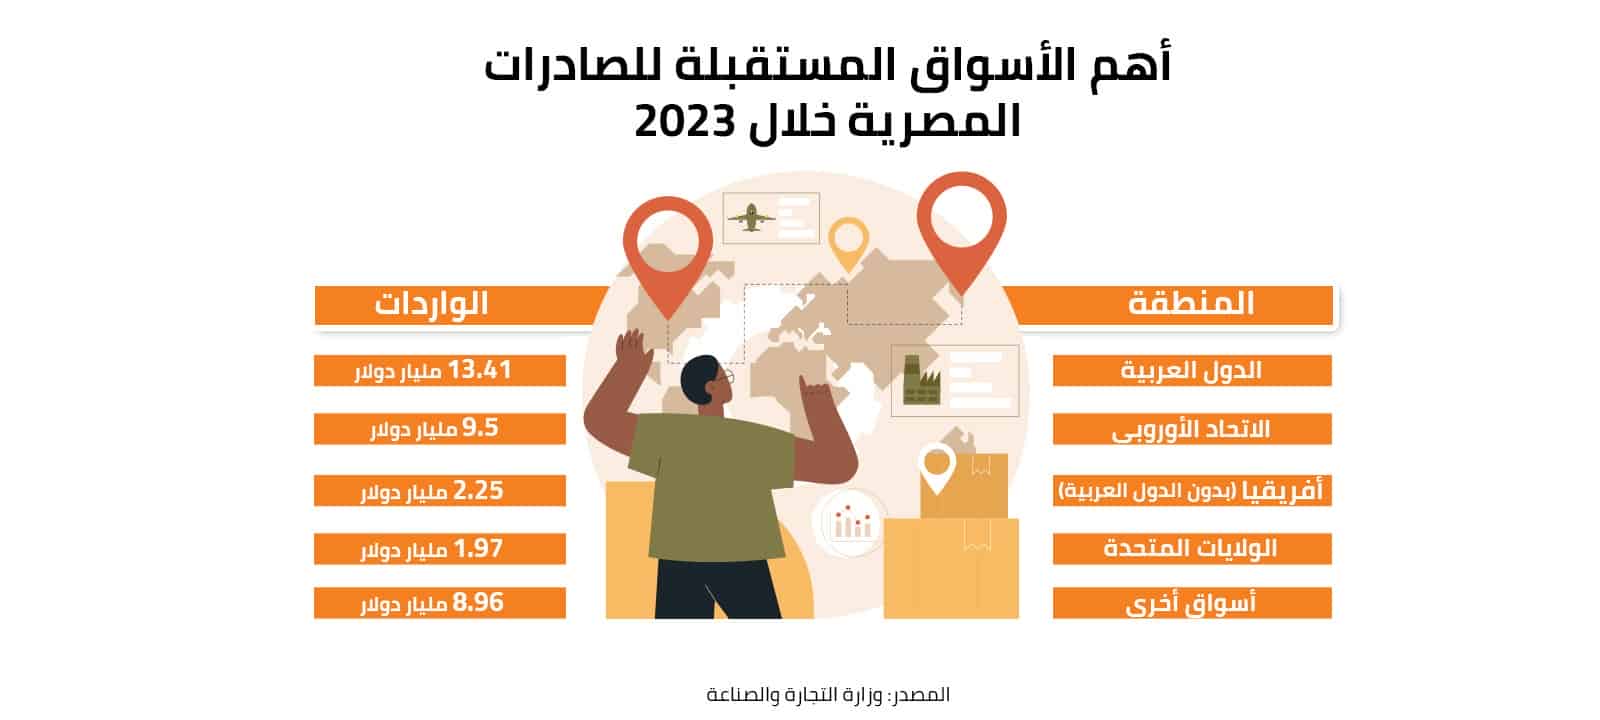 أهم الأسواق المستقبلة للصادرات المصرية خلال 2023 